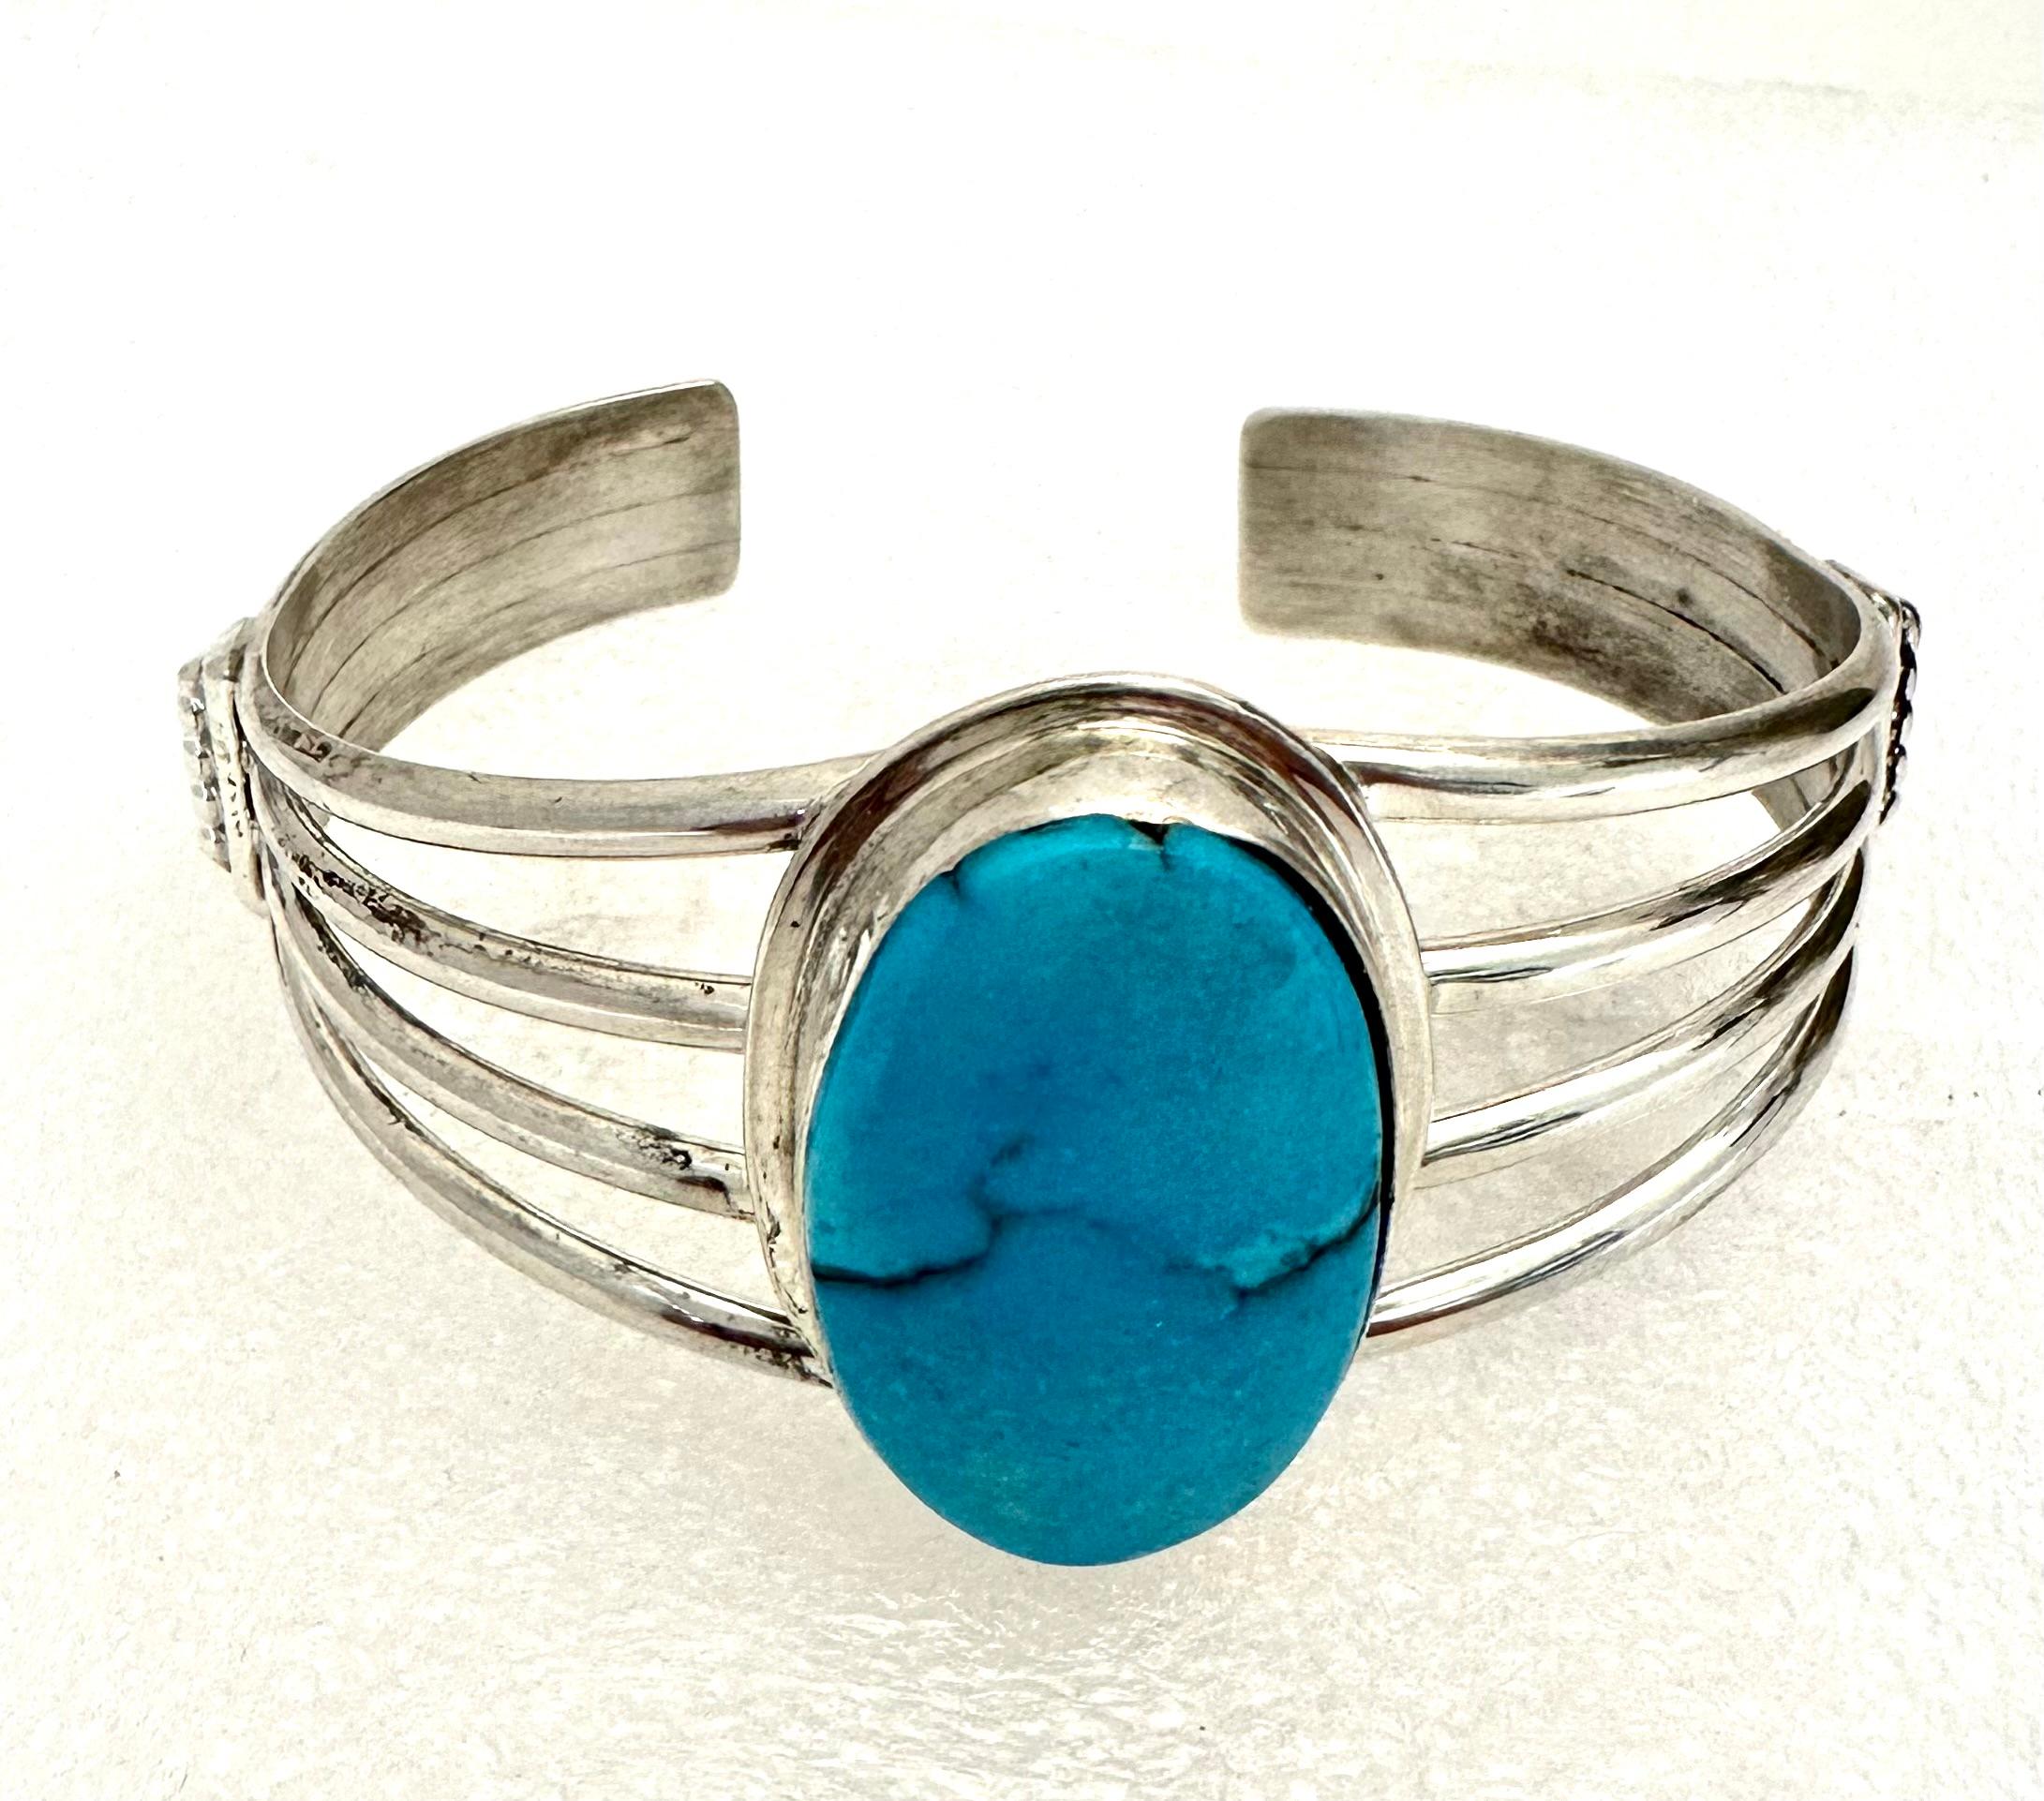 Bracelet manchette en argent sterling .925 18mm x 29mm ovale Sleeping Beauty Turquoise

La turquoise, un mélange de bleu et de vert, présente les mêmes caractéristiques de fraîcheur et d'apaisement. La couleur turquoise est associée à des